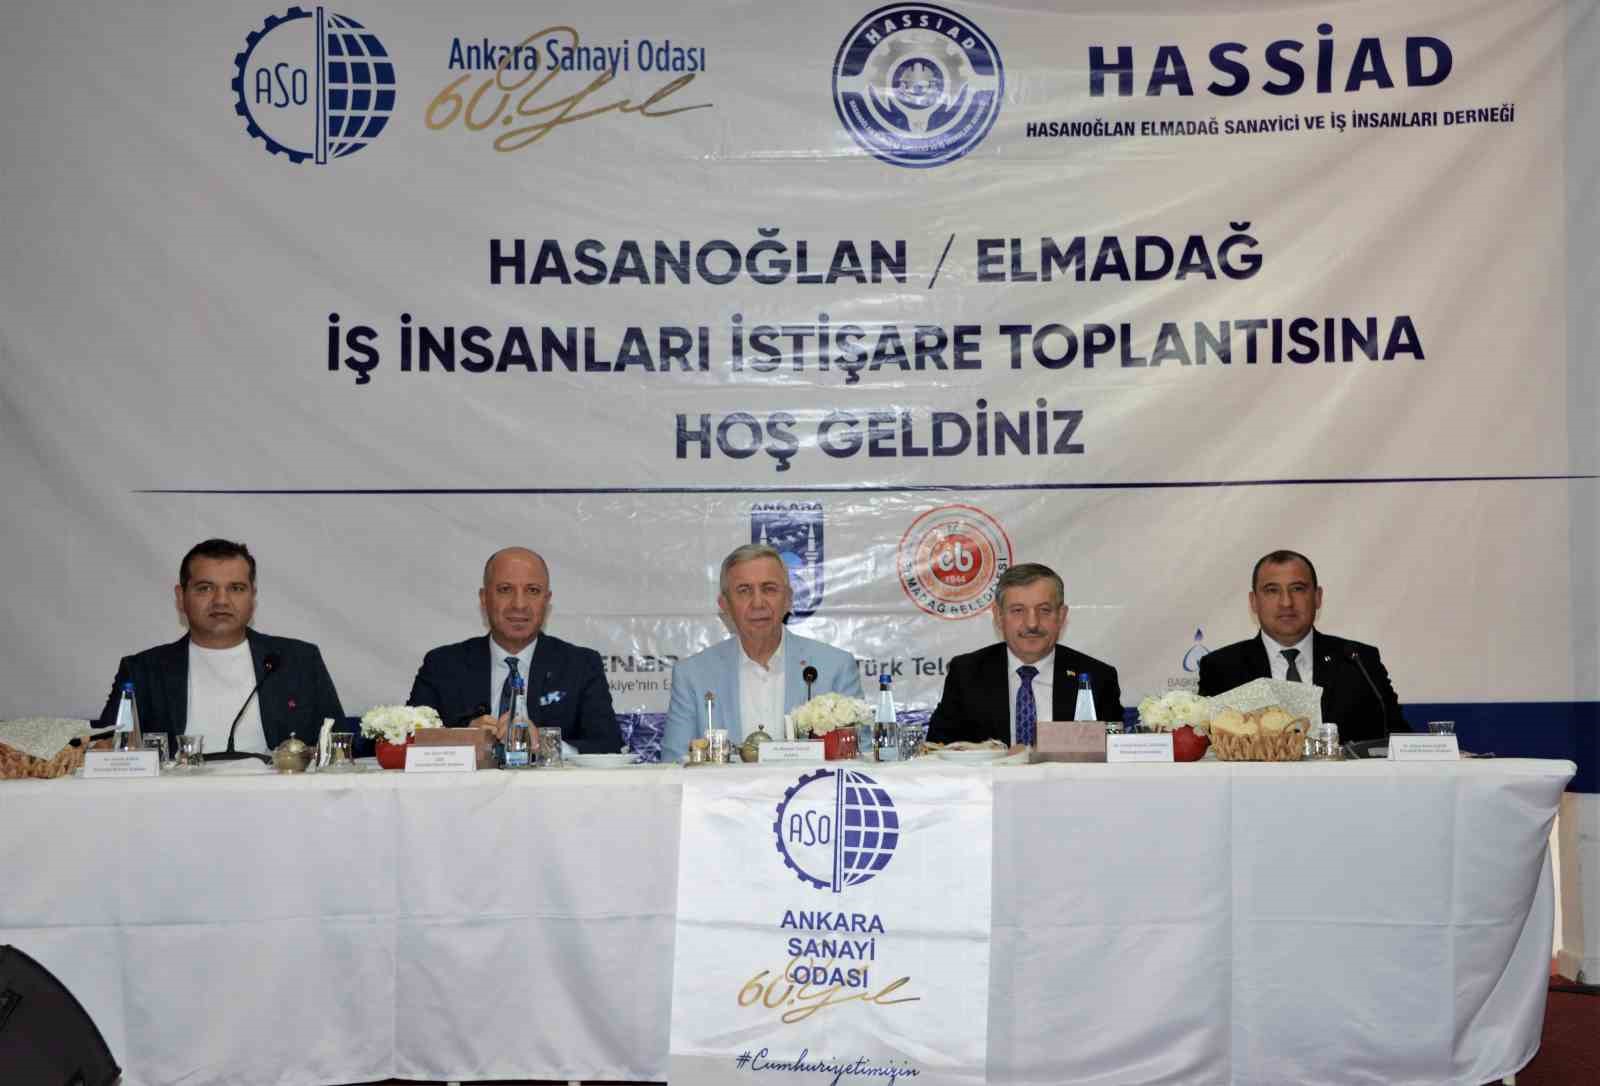 ASO Başkanı Ardıç: “Başkentimiz Türkiye’nin teknoloji, üretim ve ihracat üssü olacak”